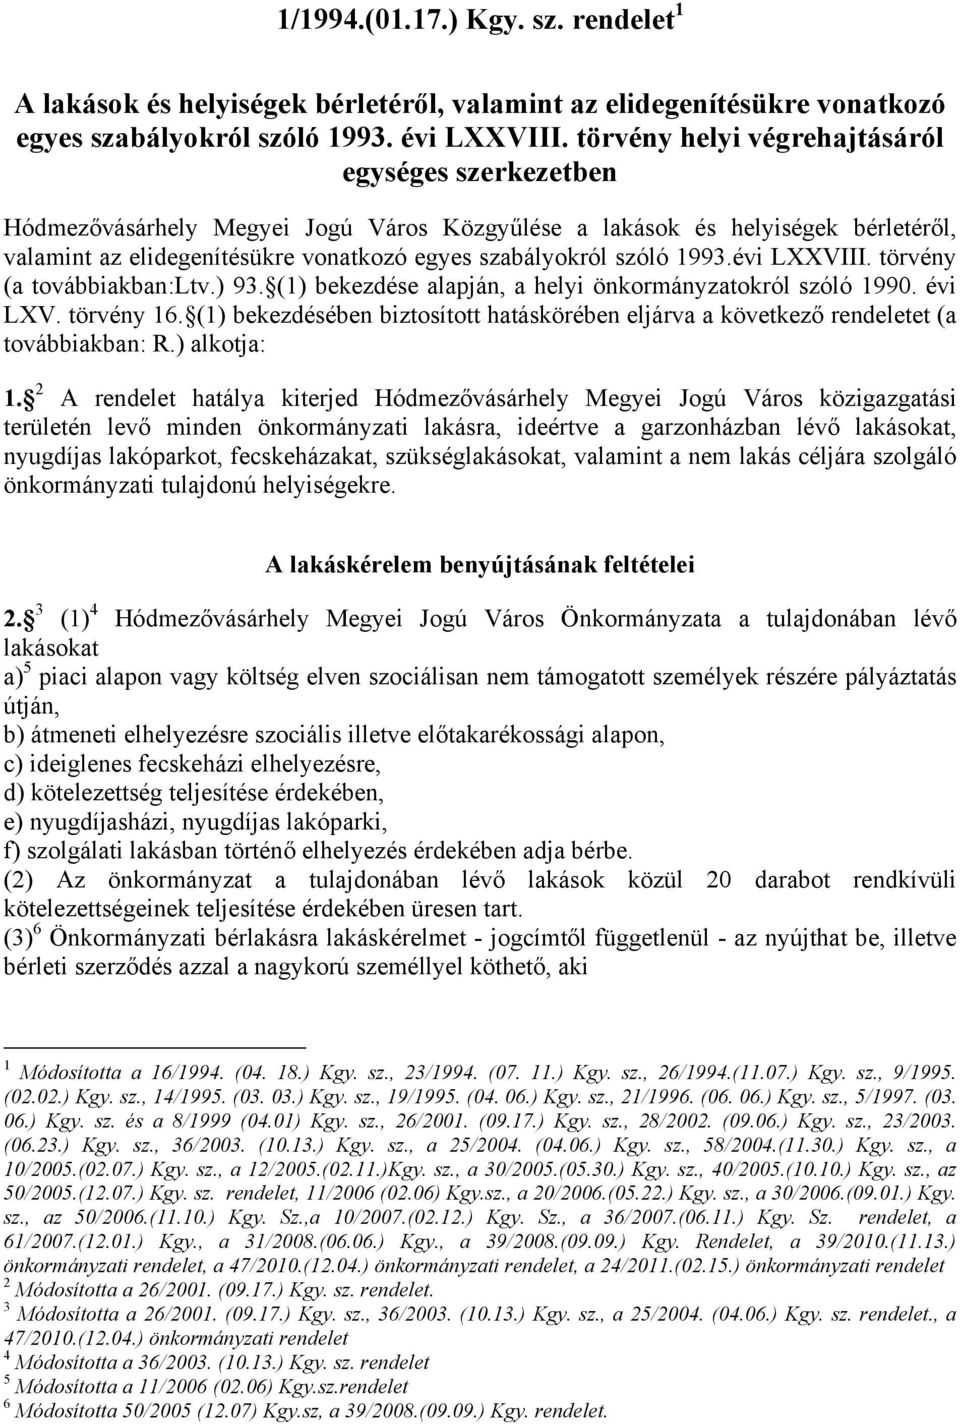 1993.évi LXXVIII. törvény (a továbbiakban:ltv.) 93. (1) bekezdése alapján, a helyi önkormányzatokról szóló 1990. évi LXV. törvény 16.